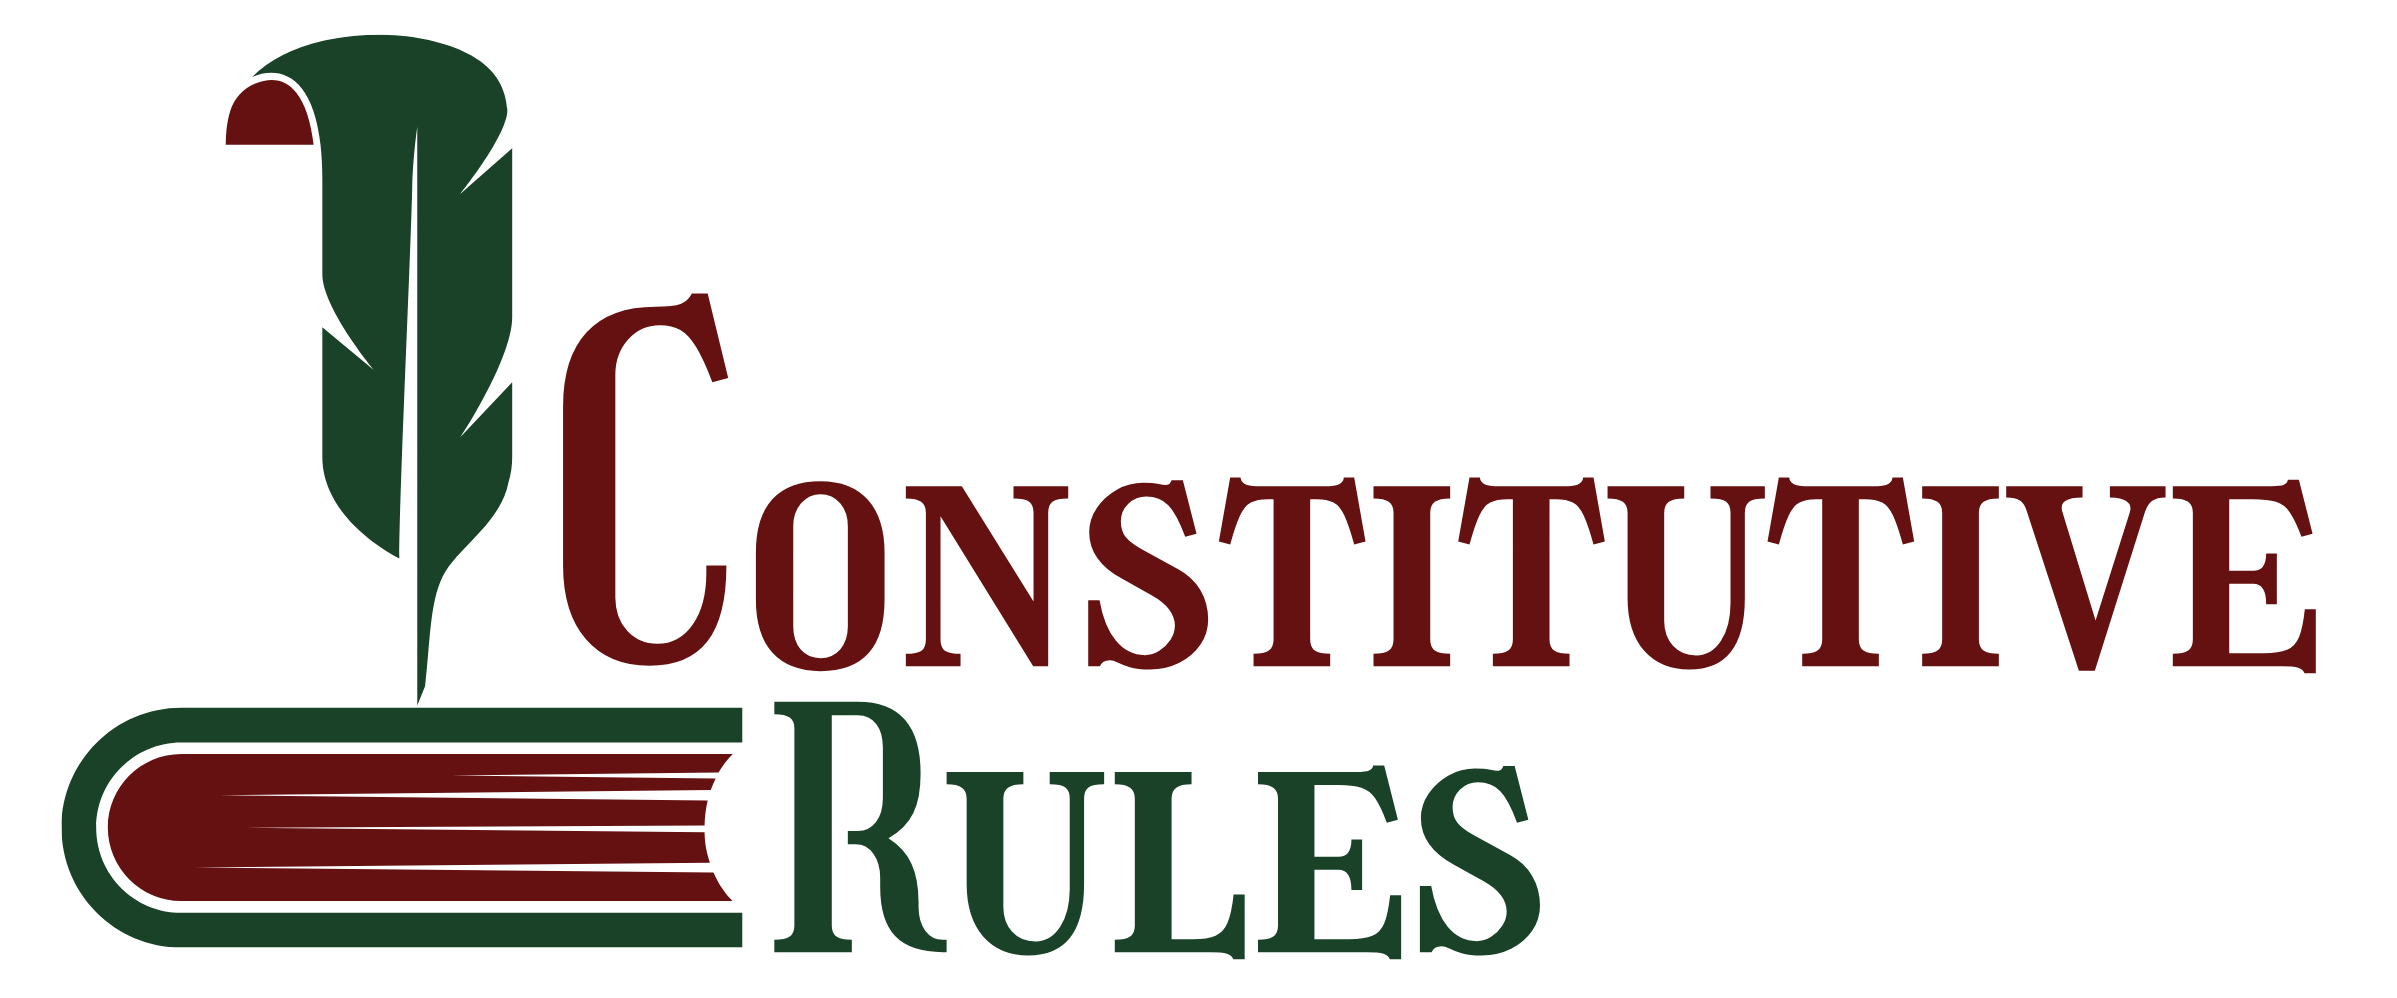 Constitutive Rules